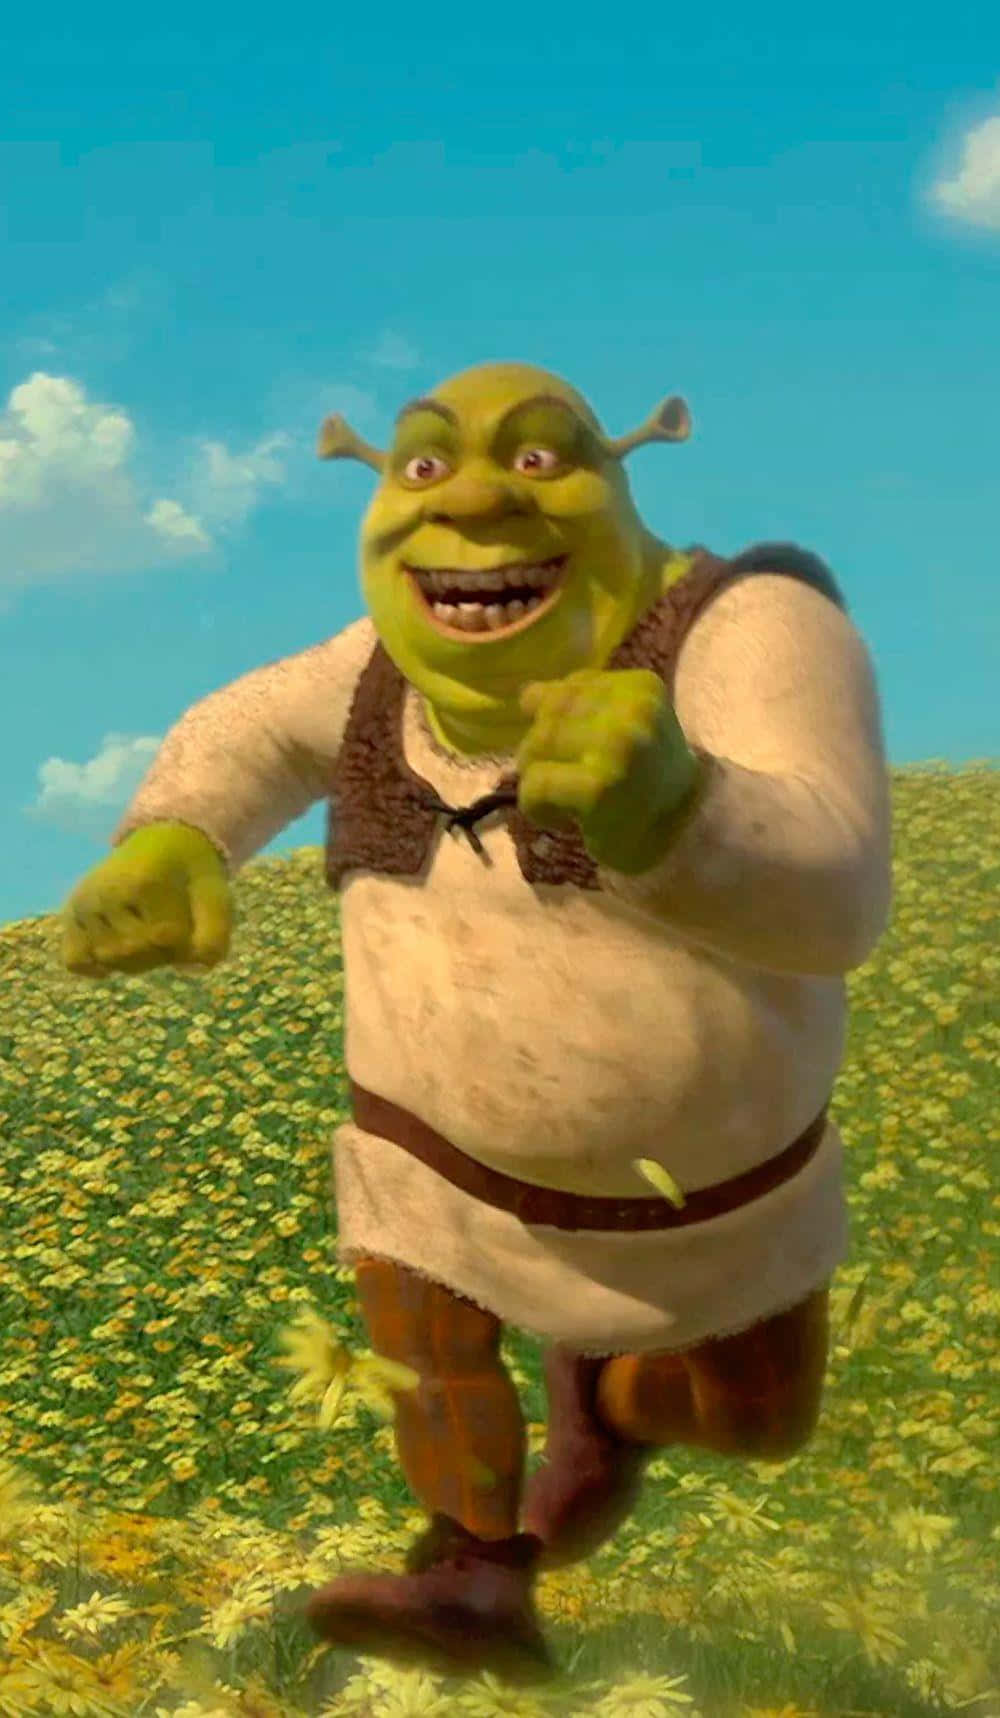 Funny Shrek Running On A Flower Field Wallpaper